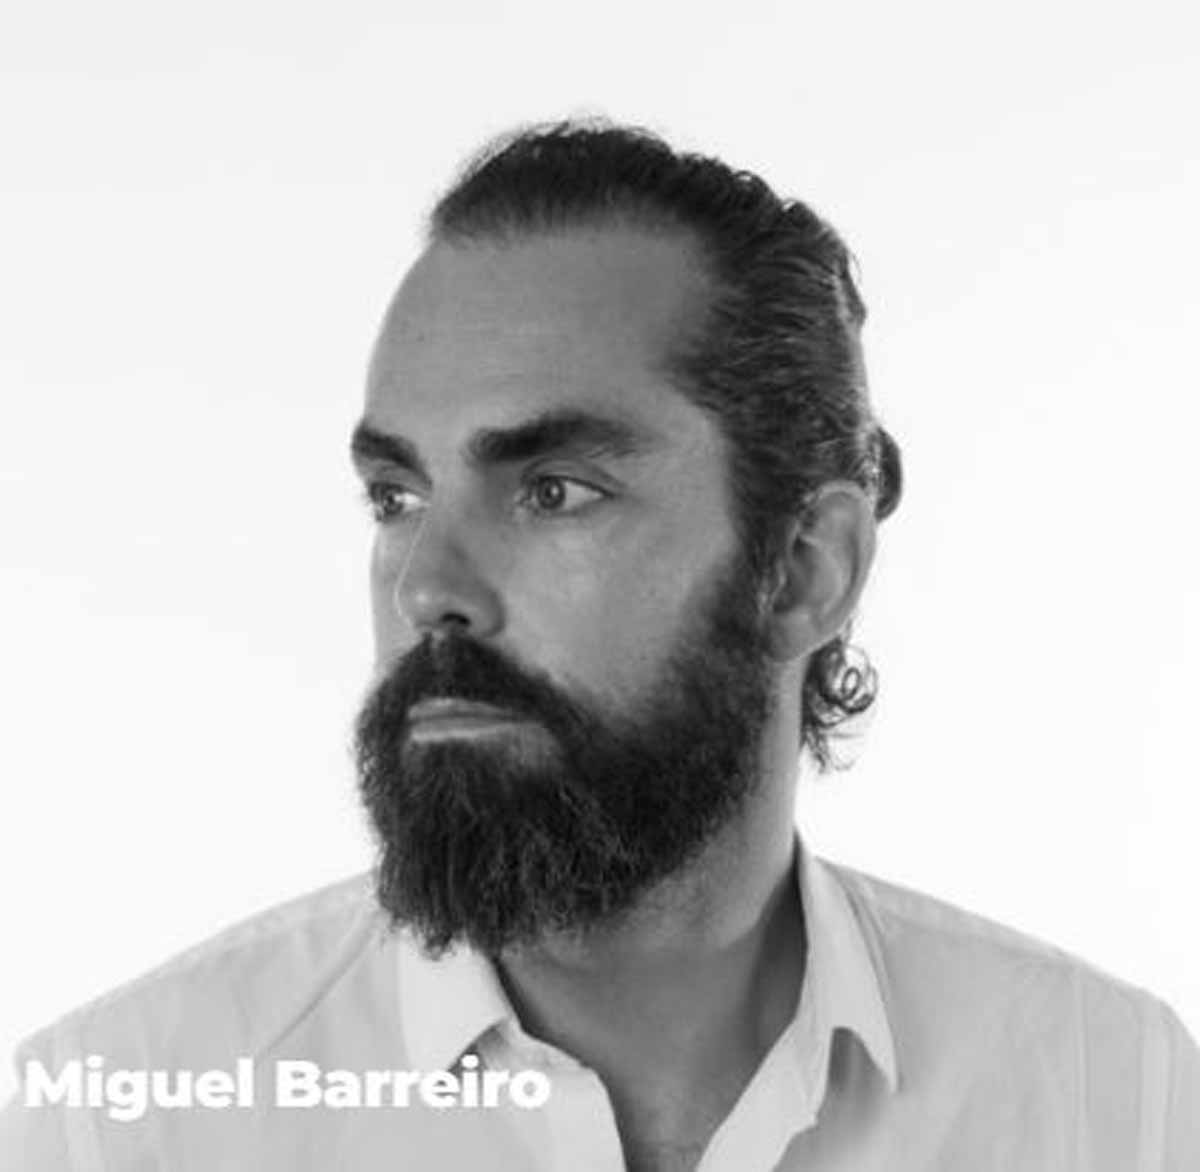 Miguel Barreiro